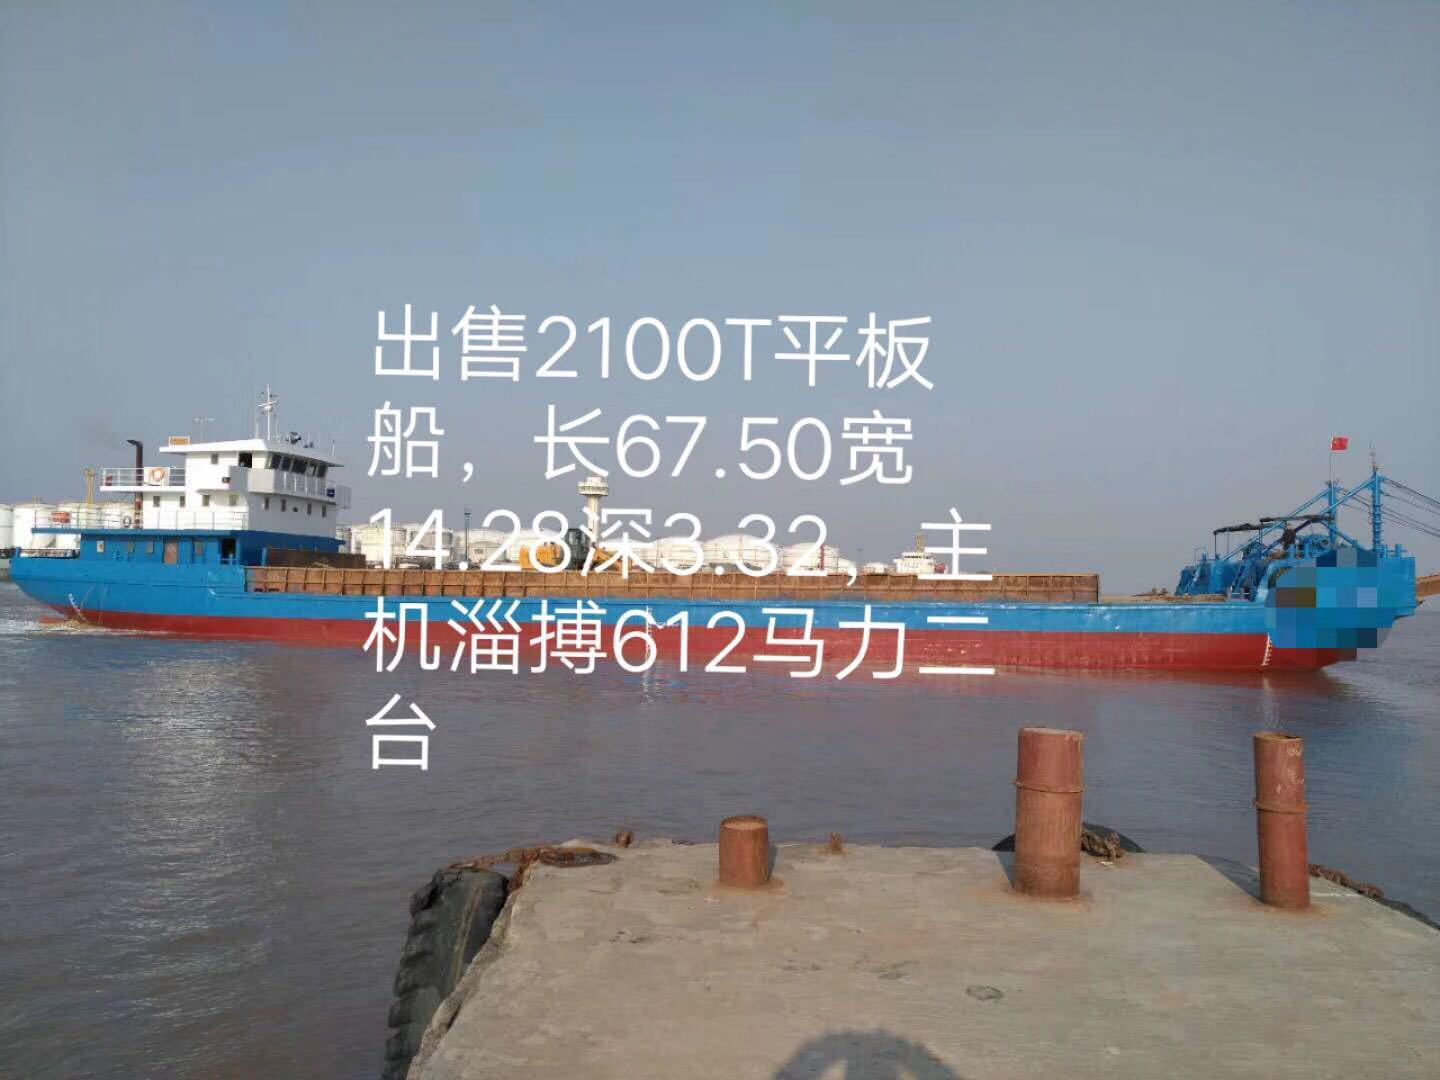 出售2100吨平板船